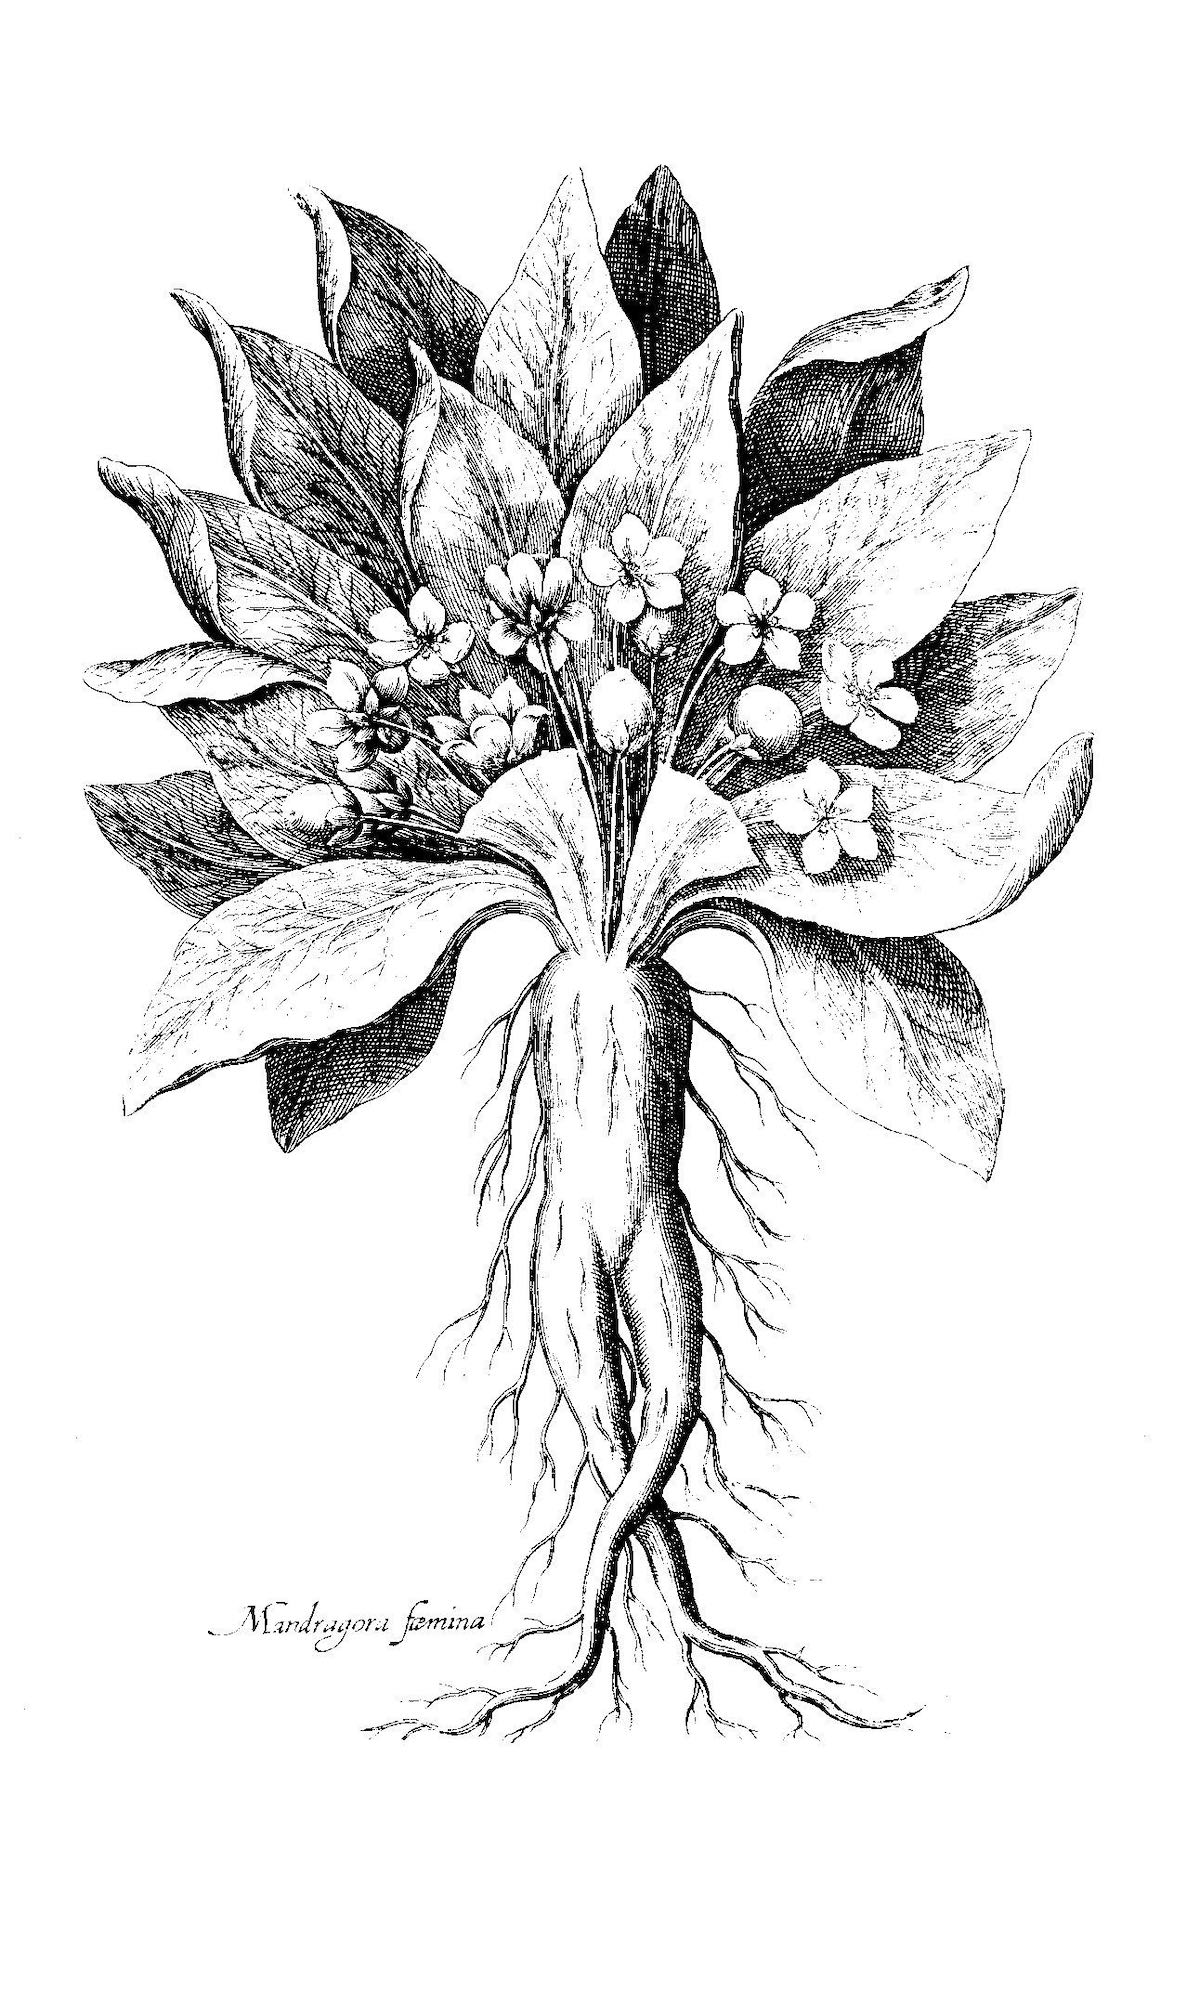 Image of mandrake from de Bry's Florilegium Renovatum et Auctum, 1641